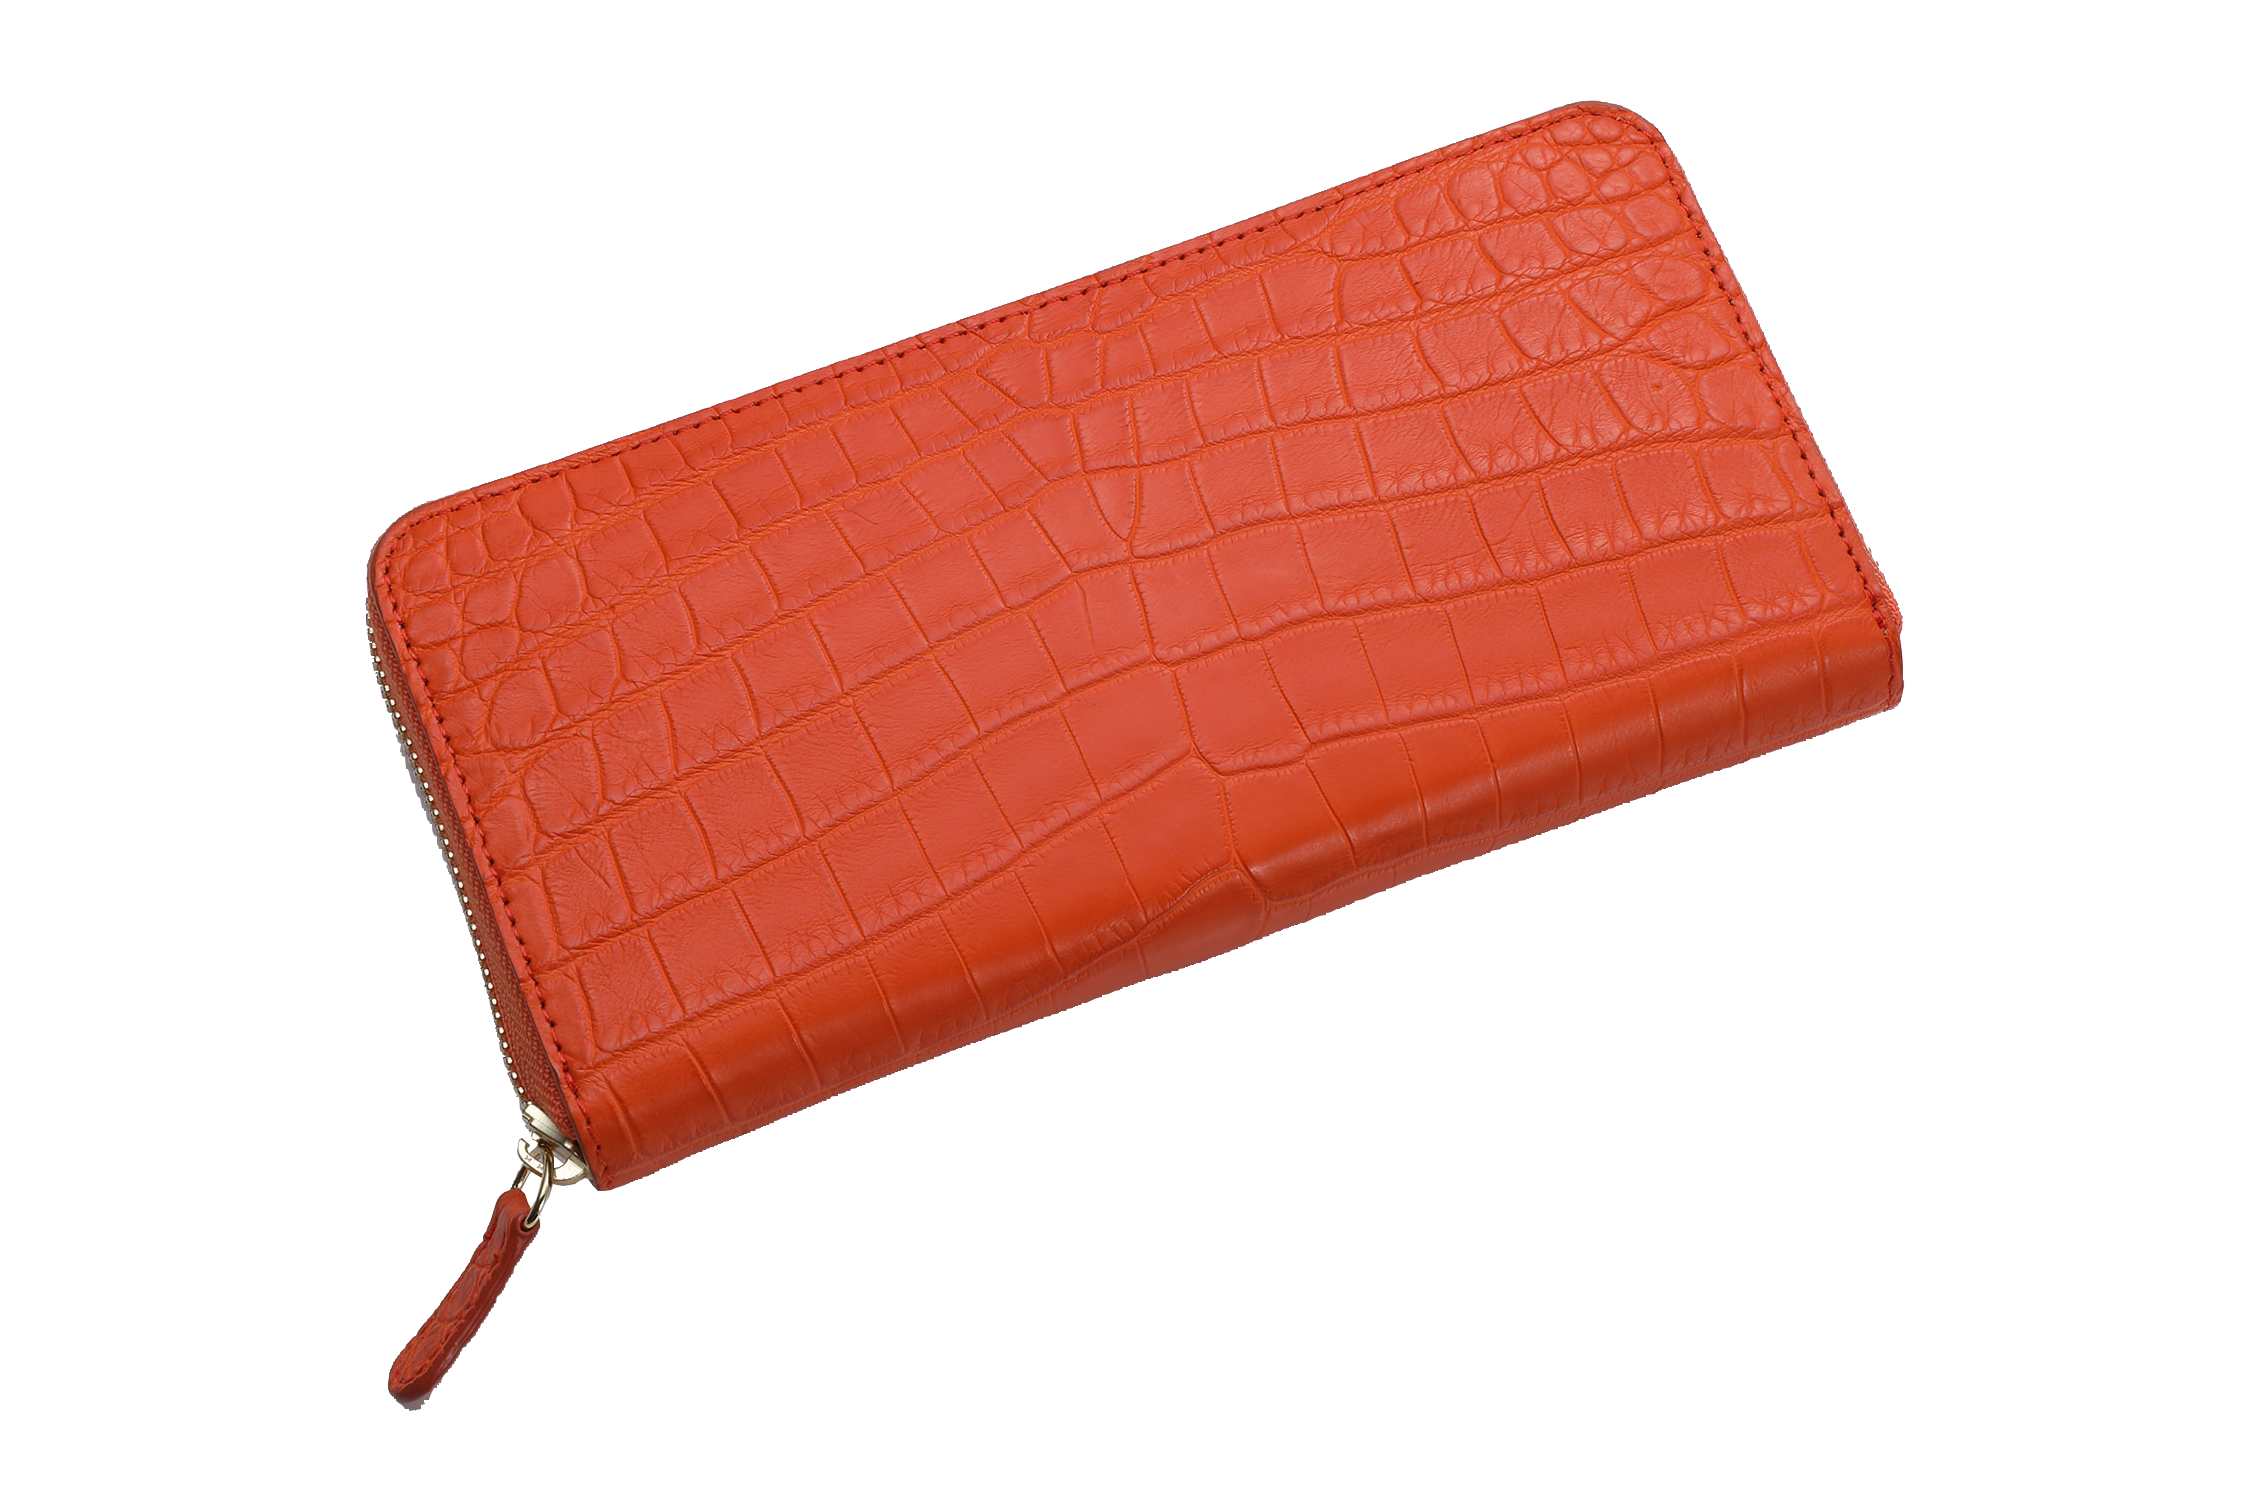 クロコダイル財布でオススメのブランド財布は山本製鞄のクロコダイル ラウンドファスナー長財布です